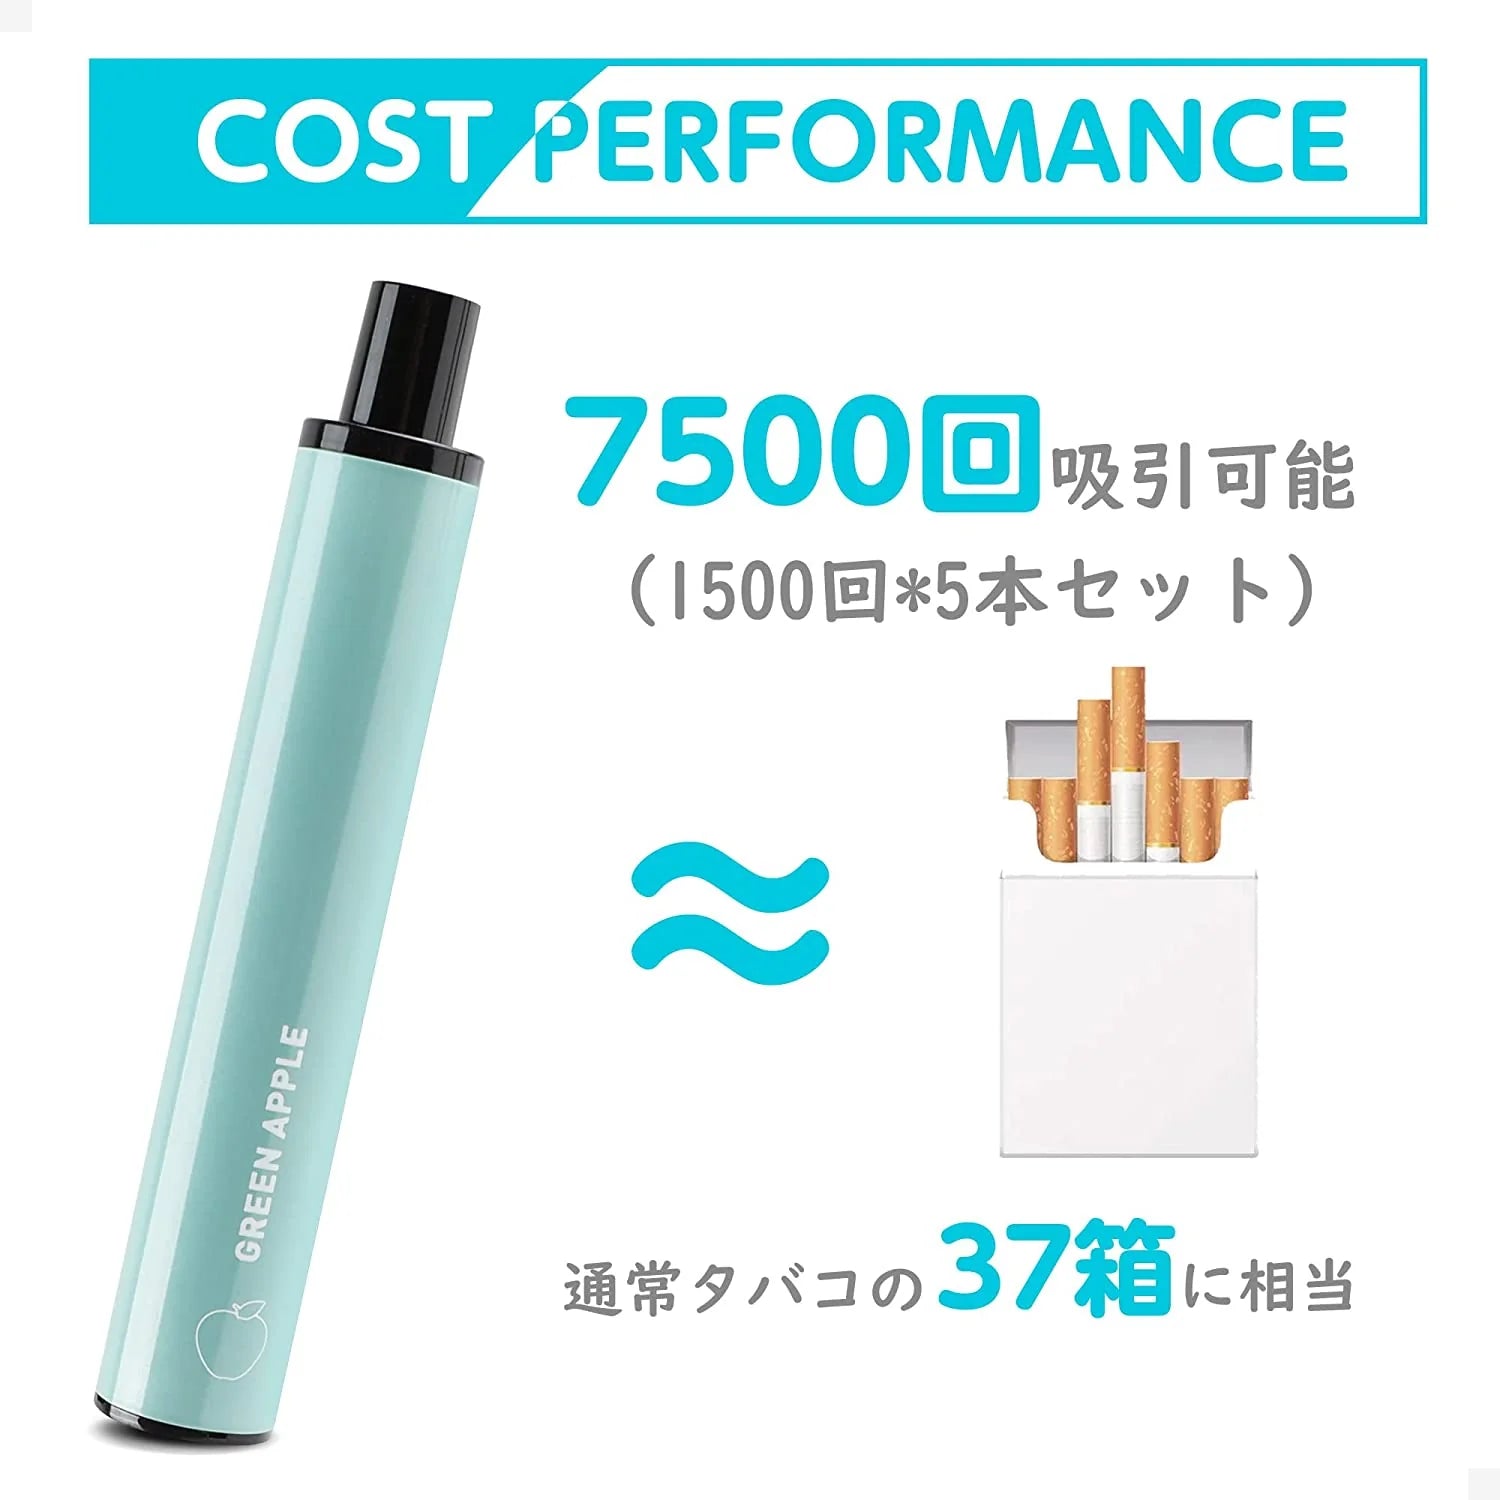 Electronic Cigarette Disposable JT1 Ploom Tech Tobacco Capsule Attachable Vape Explosive Smoke Zero Nicotine Auto Switch (Orange)